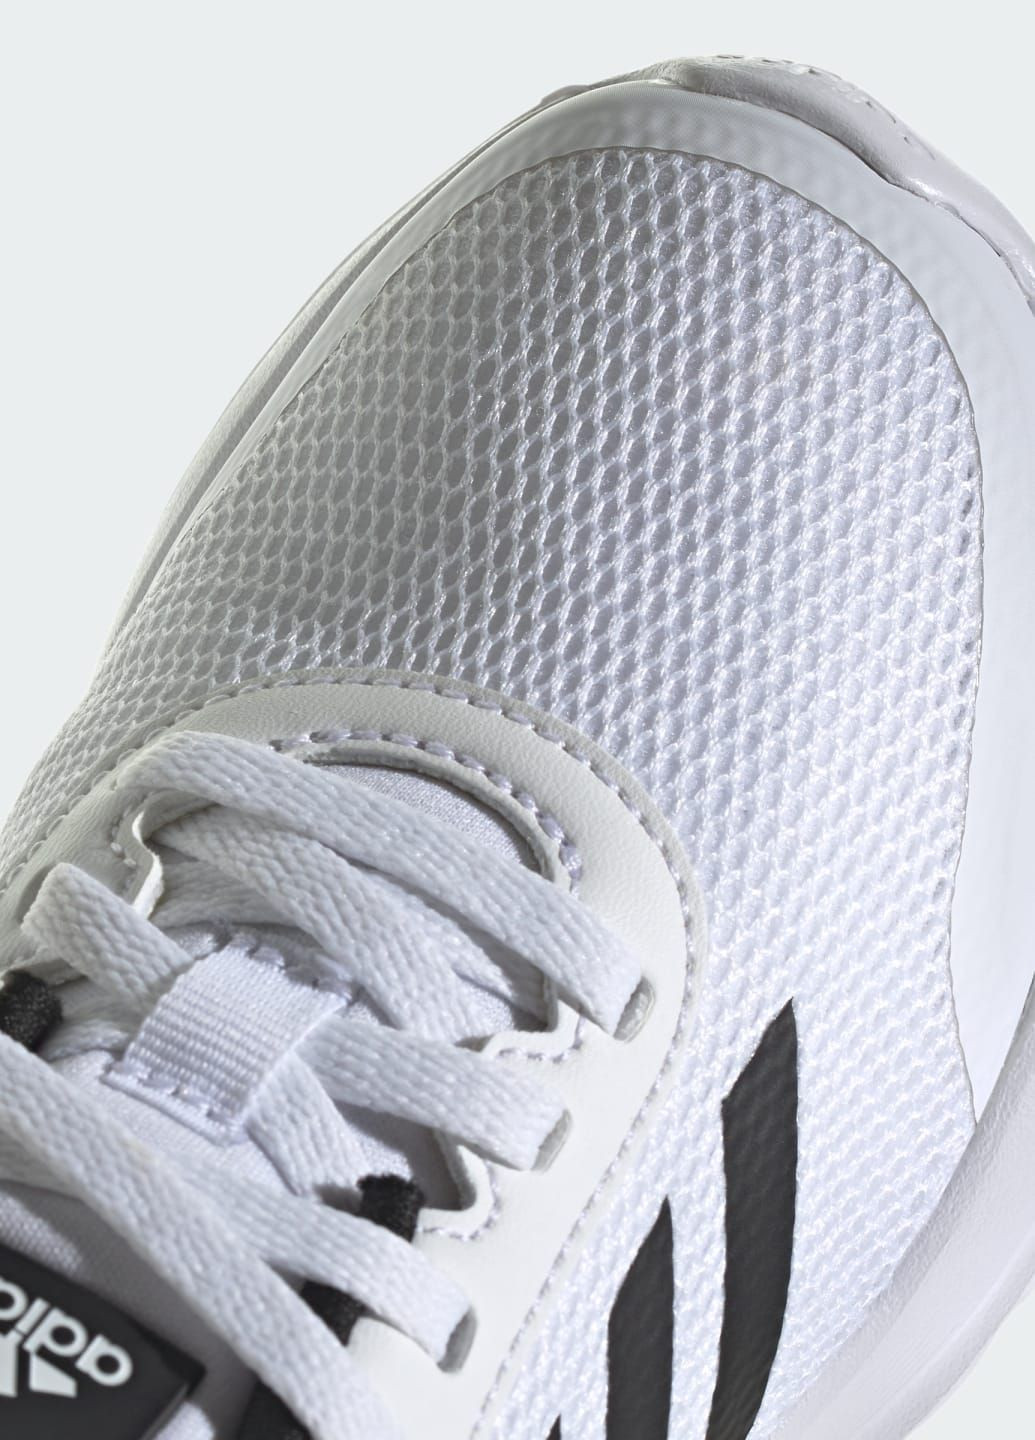 Білі всесезонні кросівки tensaur run adidas